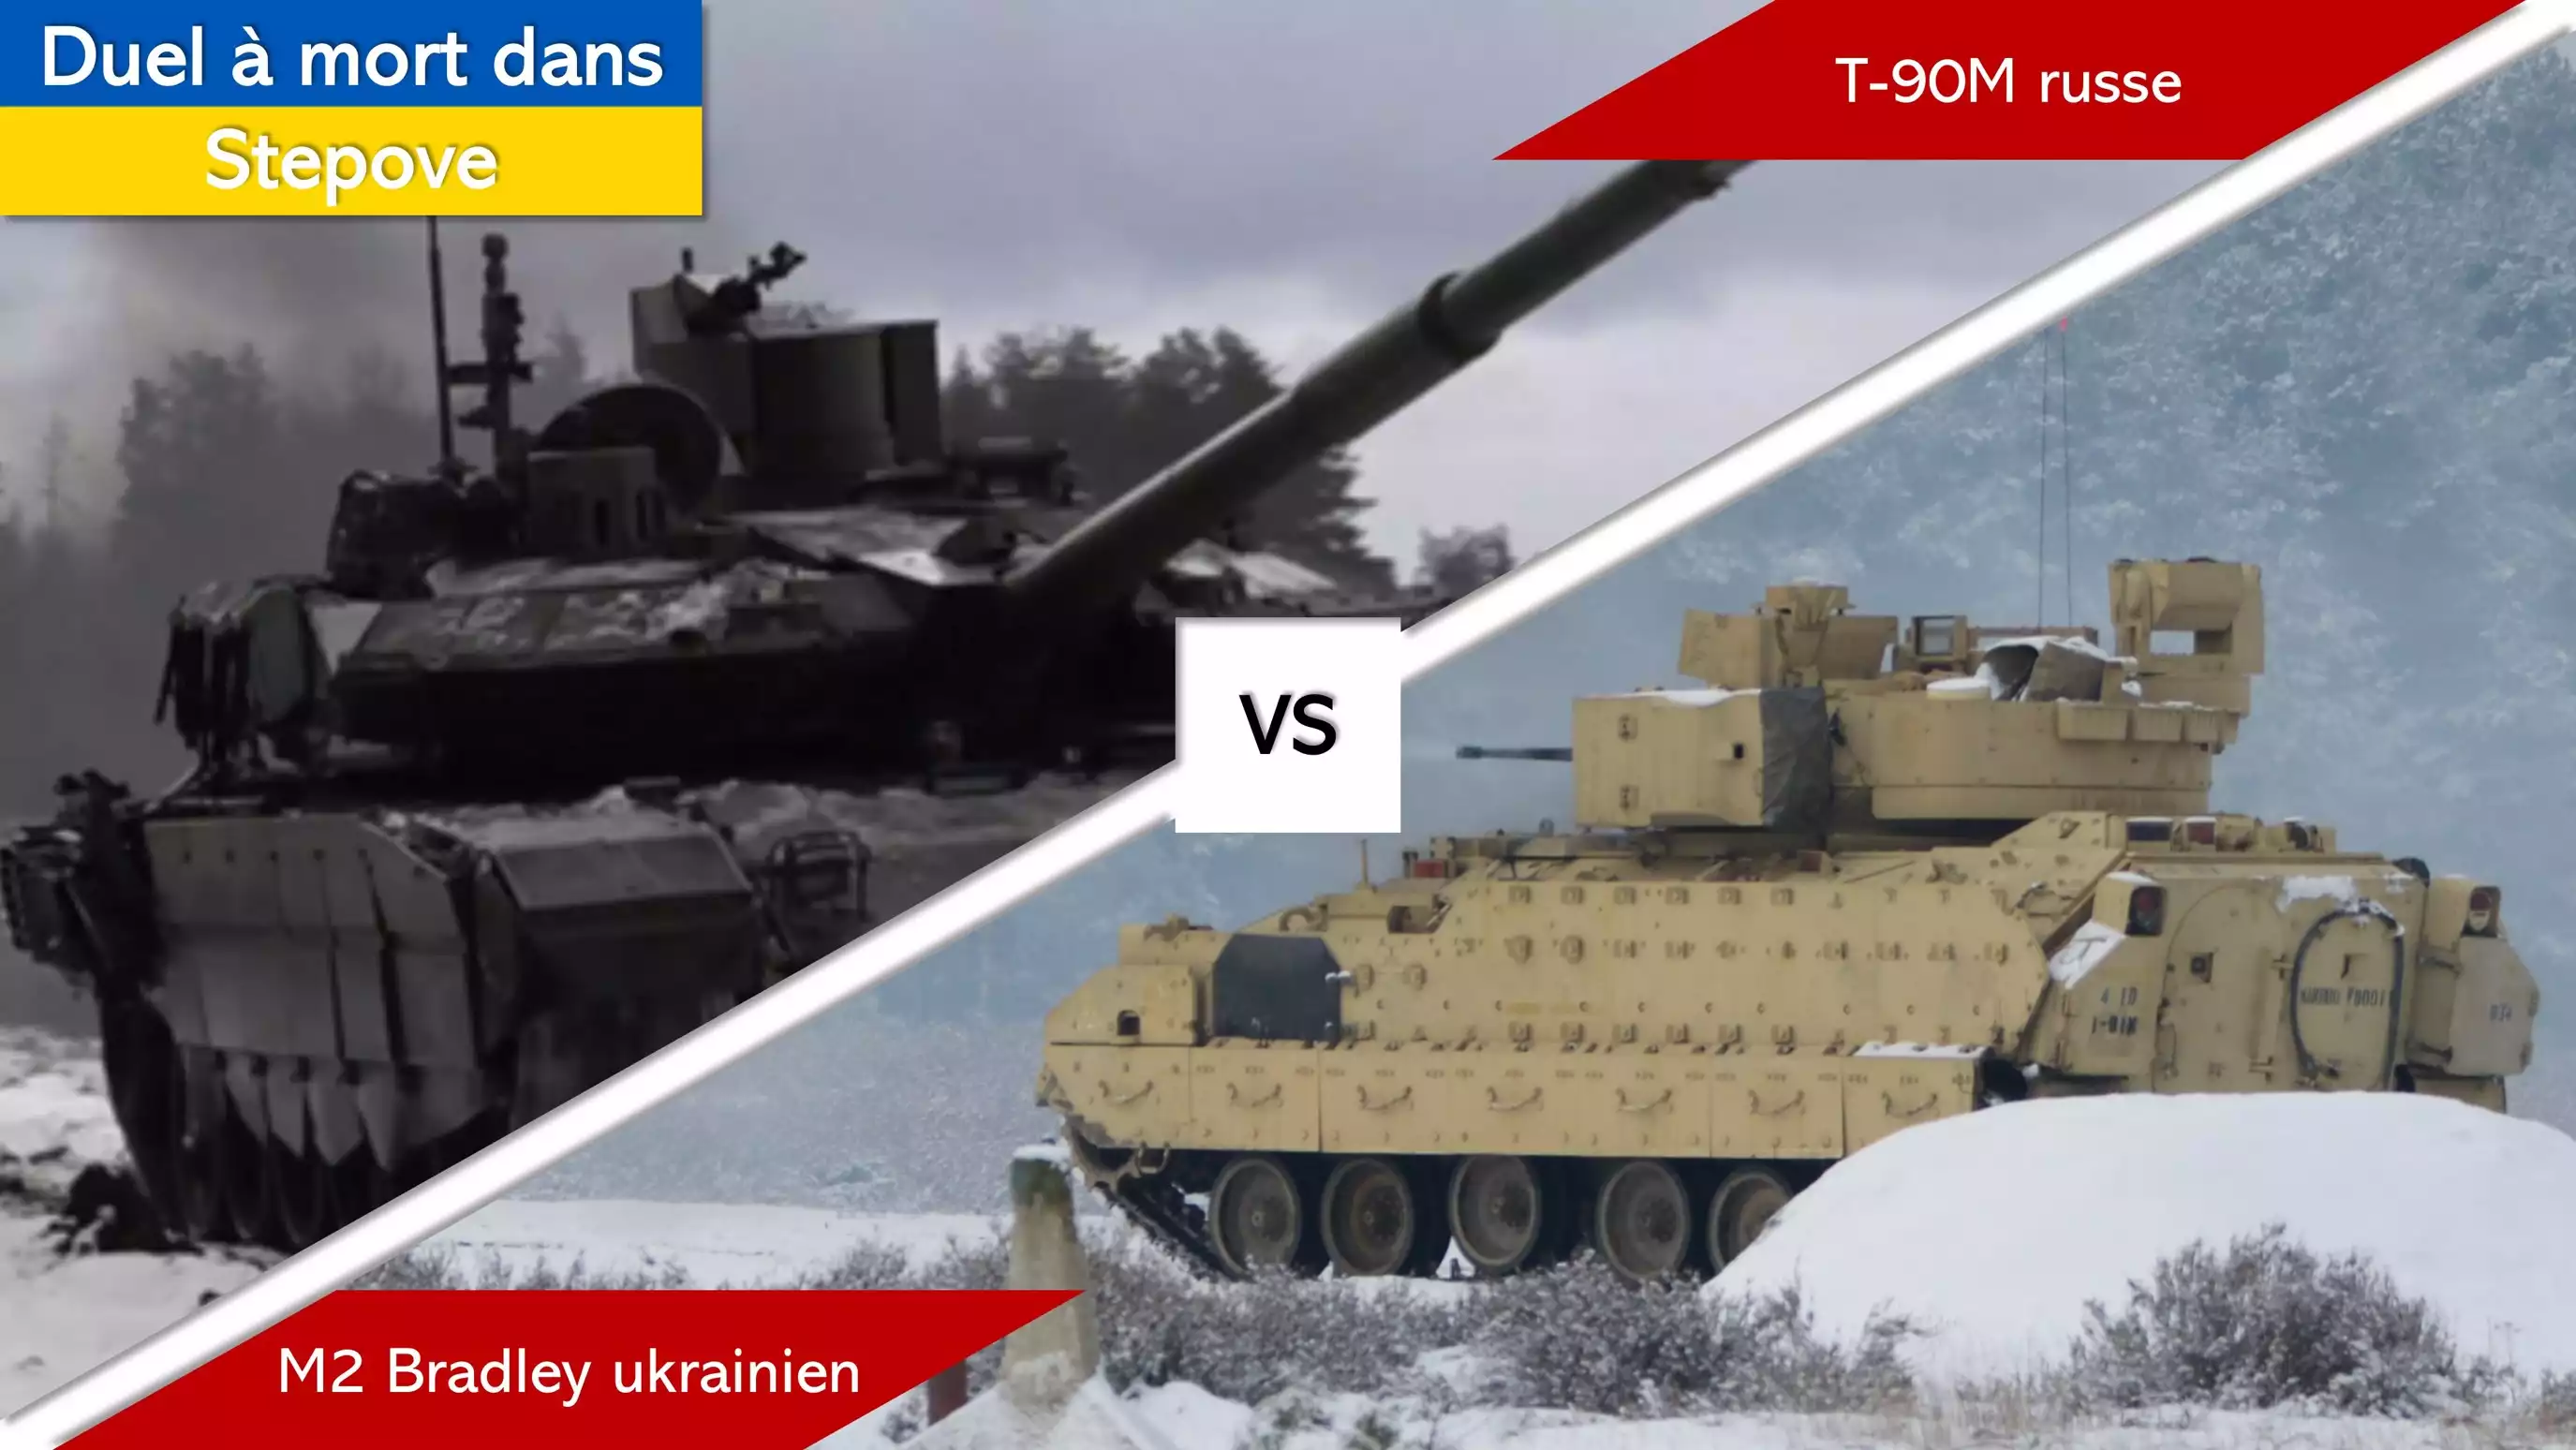 Duel à mort en Ukraine : char T-90M russe contre blindé M2 Bradley ukrainien